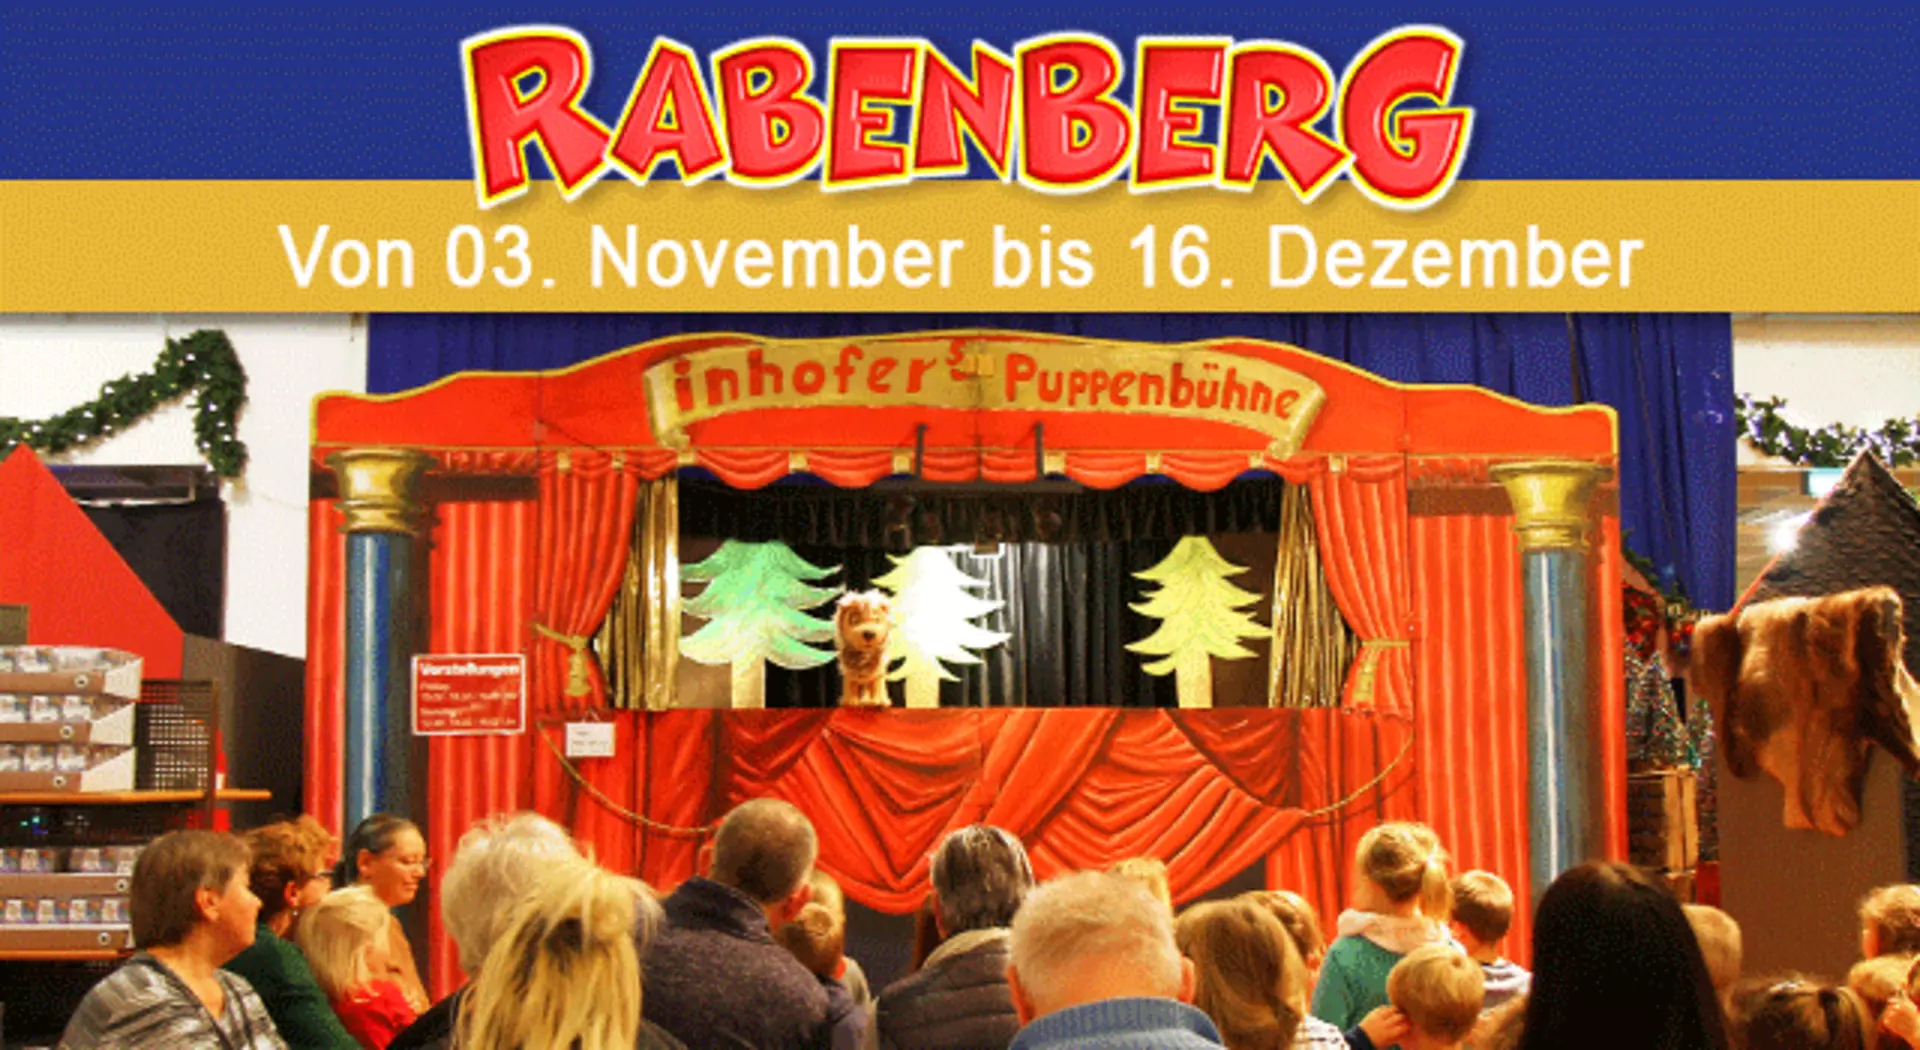 Spaß für die ganze Familie - das Puppentheater Rabenberg bei Möbel Inhofer